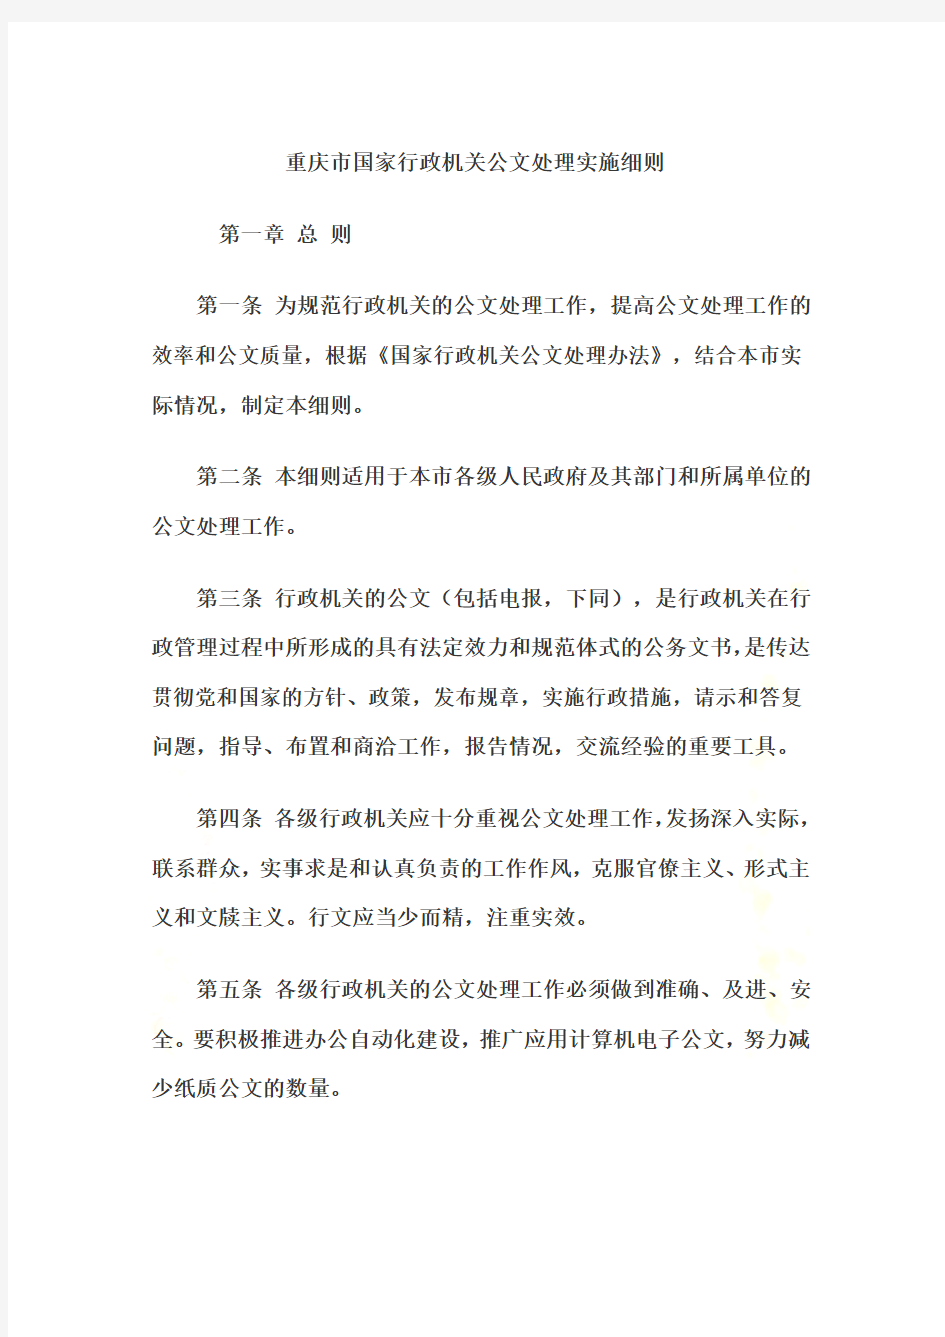 重庆市国家行政机关公文处理实施细则